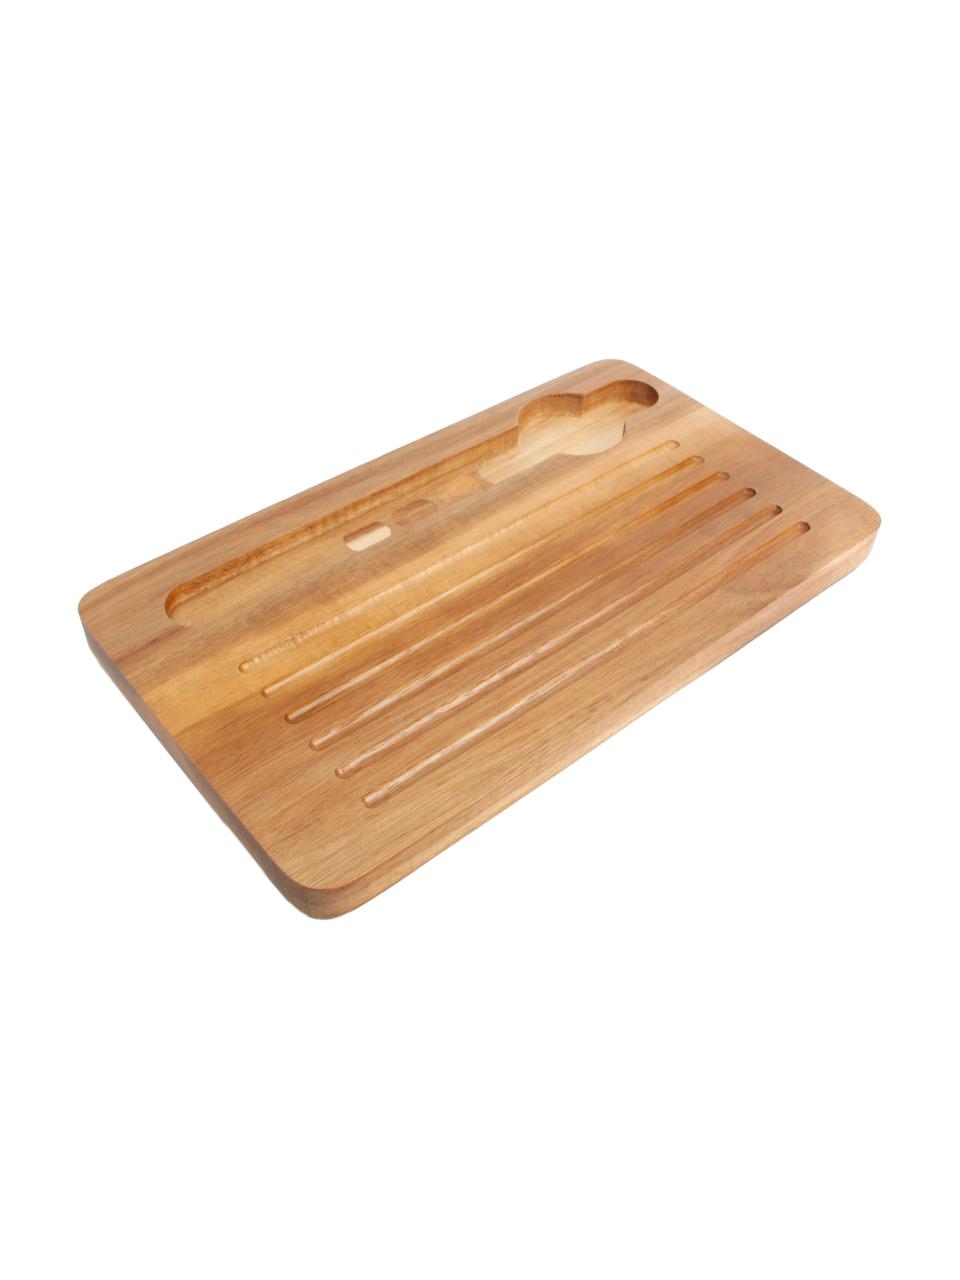 Komplet chlebaka Hudson, 3 elem., Drewno akacjowe, tworzywo sztuczne (ABS), stal nierdzewna, drewno naturalne, Czarny, drewno akacjowe, odcienie srebrnego, S 27 x W 19 cm